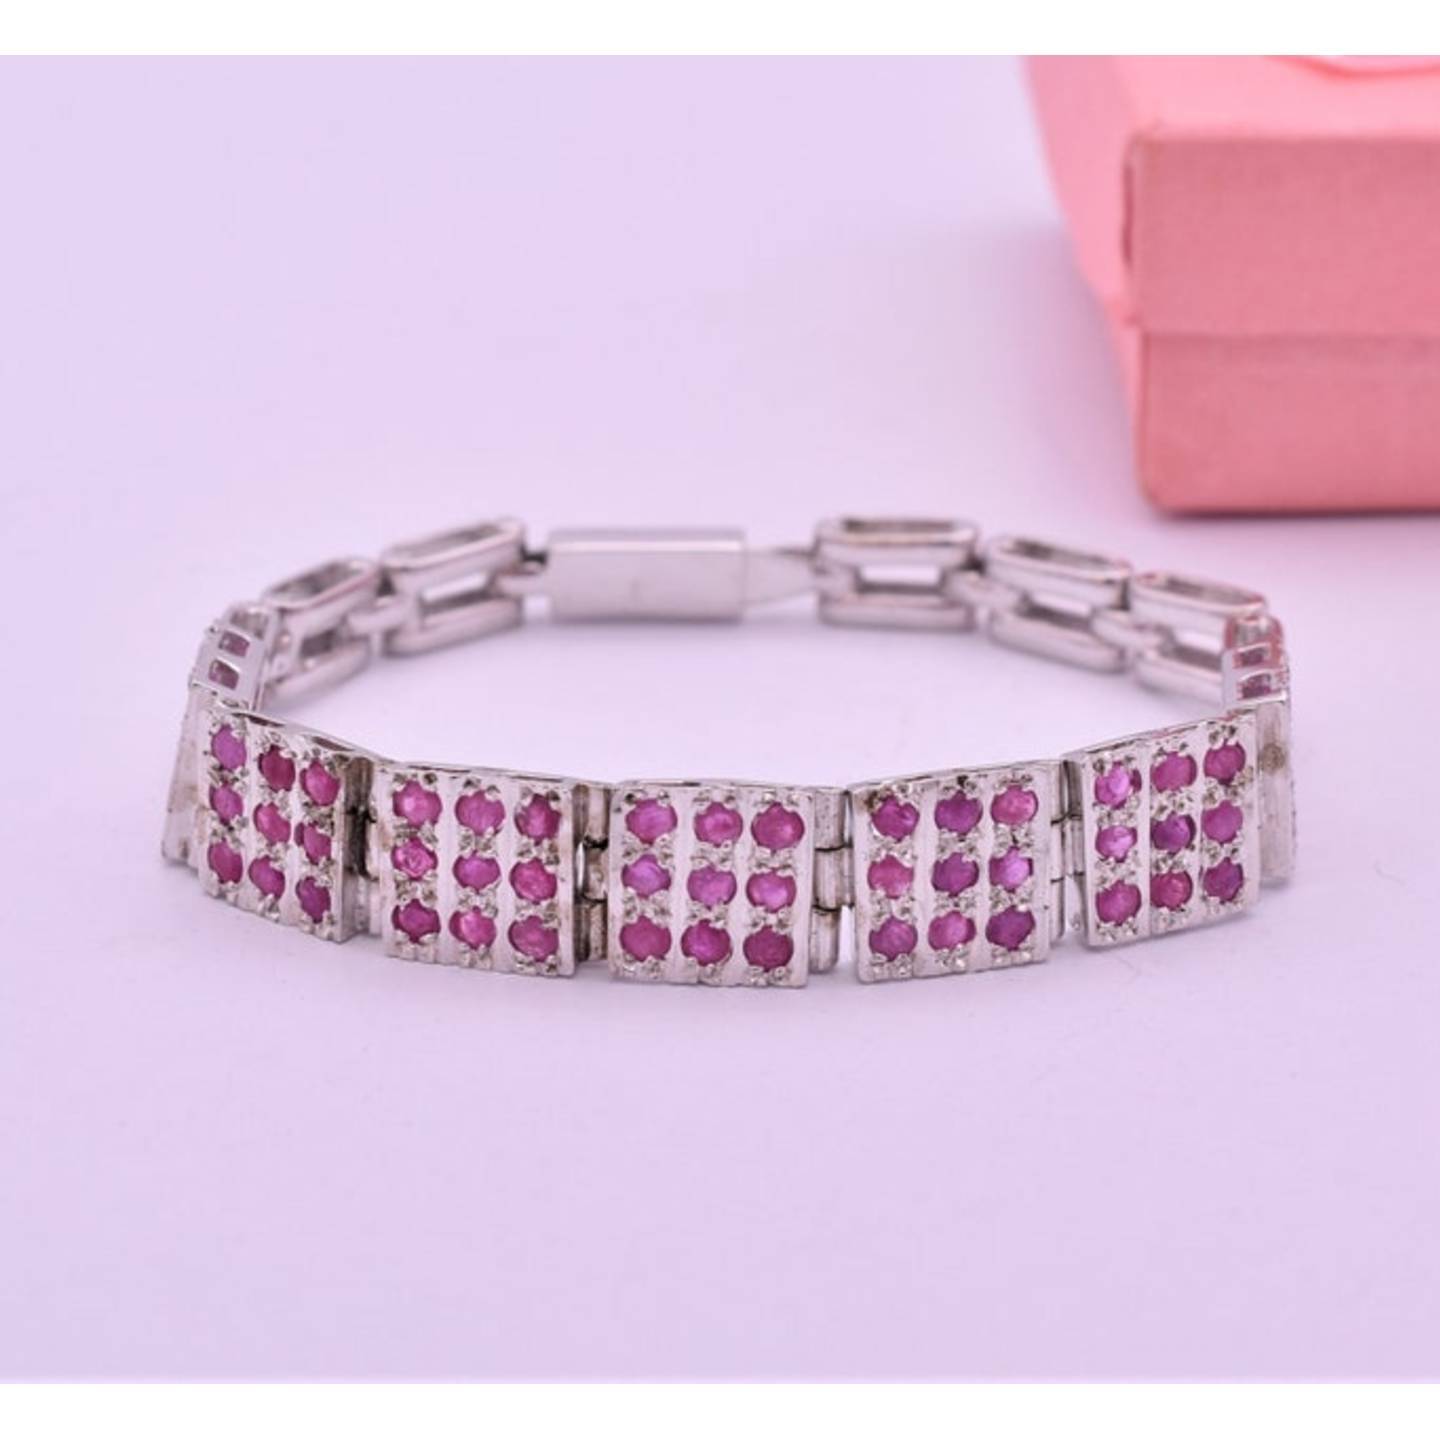 Stunning Natural Kashmir Ruby Gemstone Bracelet - Solid 925 Sterling Silver Bracelet - Length 7 Inches